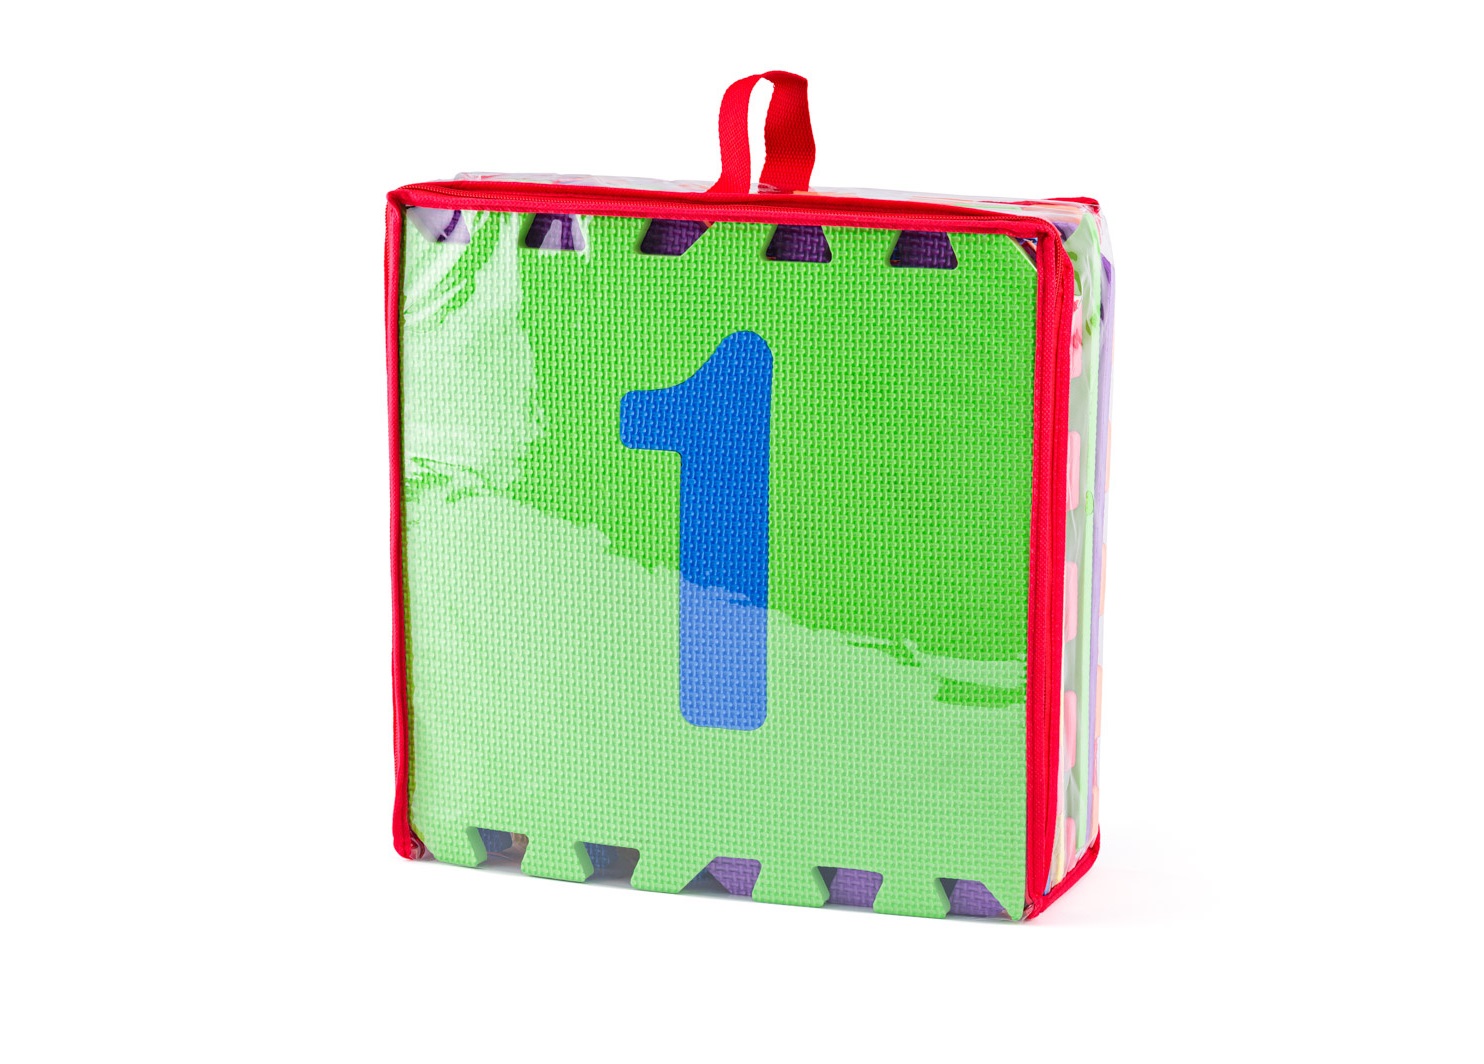 Súčasťou dodávky je zeleno-červená taška s pútkom as uzatváraním na zips, ktorú využijete na uskladnenie aj prenášanie puzzlí Plastica 105591629 z miesta na miesto.